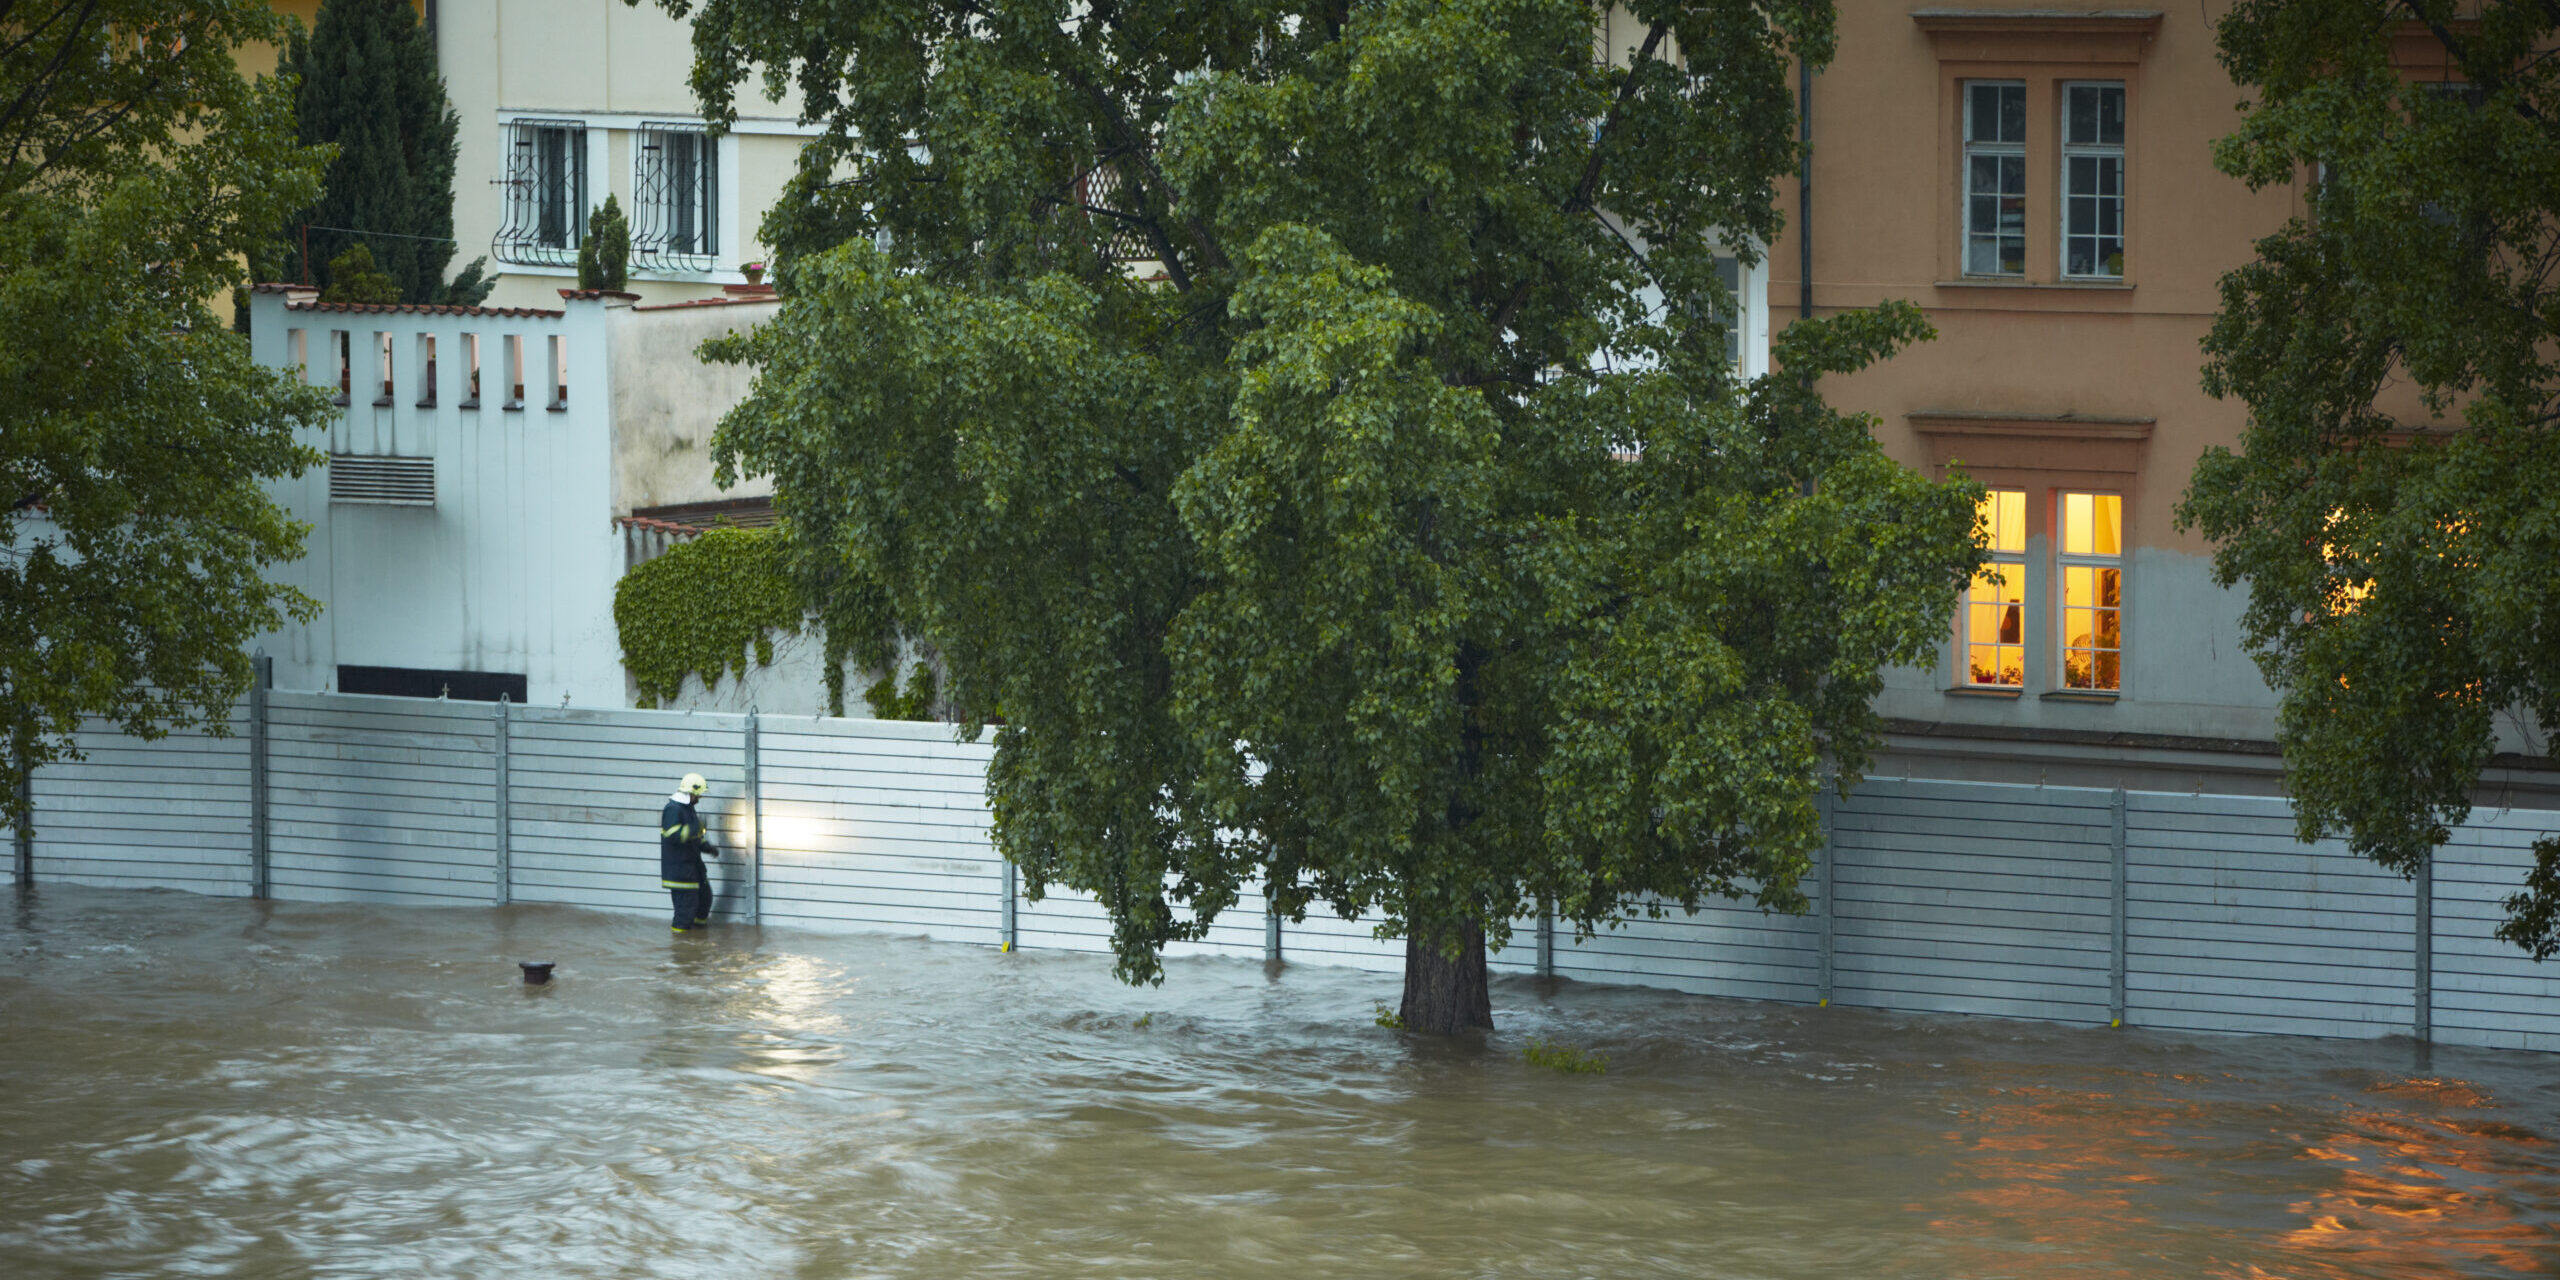 10-Punkte-Plan: Verbände fordern besseren Hochwasserschutz